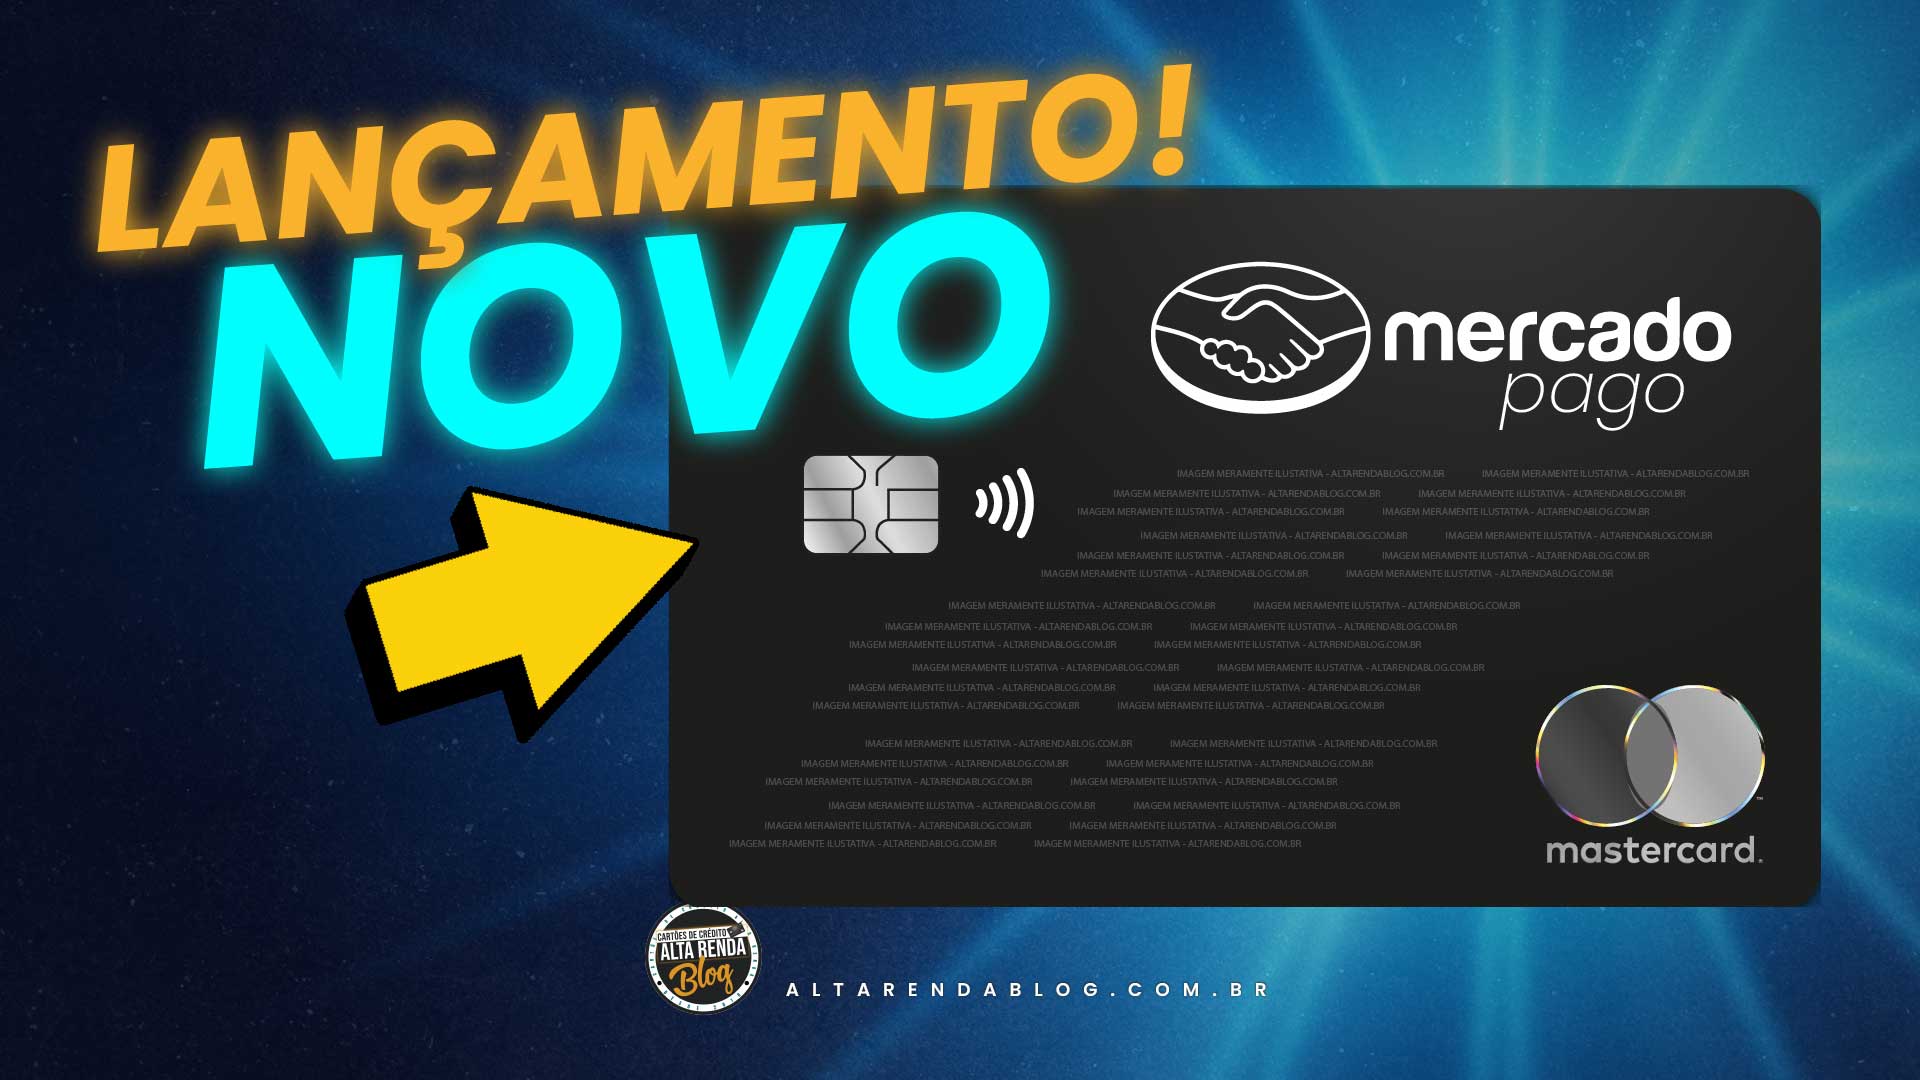 IncrÍvel Mercado Pago Lança Novo Cartão De Crédito Flexibilidade Financeira Alta Renda Blog 5203